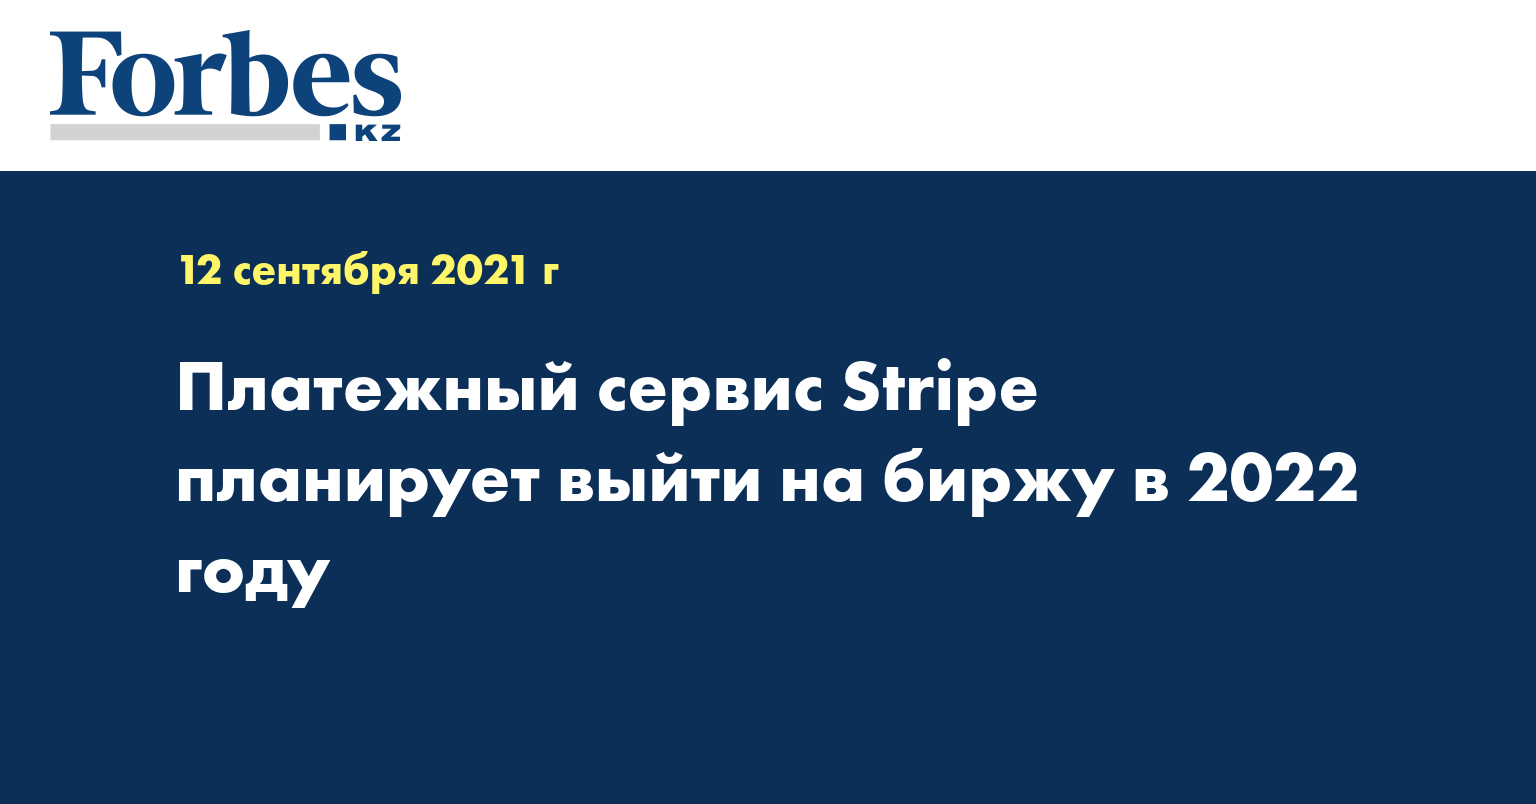 Платежный сервис Stripe планирует выйти на биржу в 2022 году